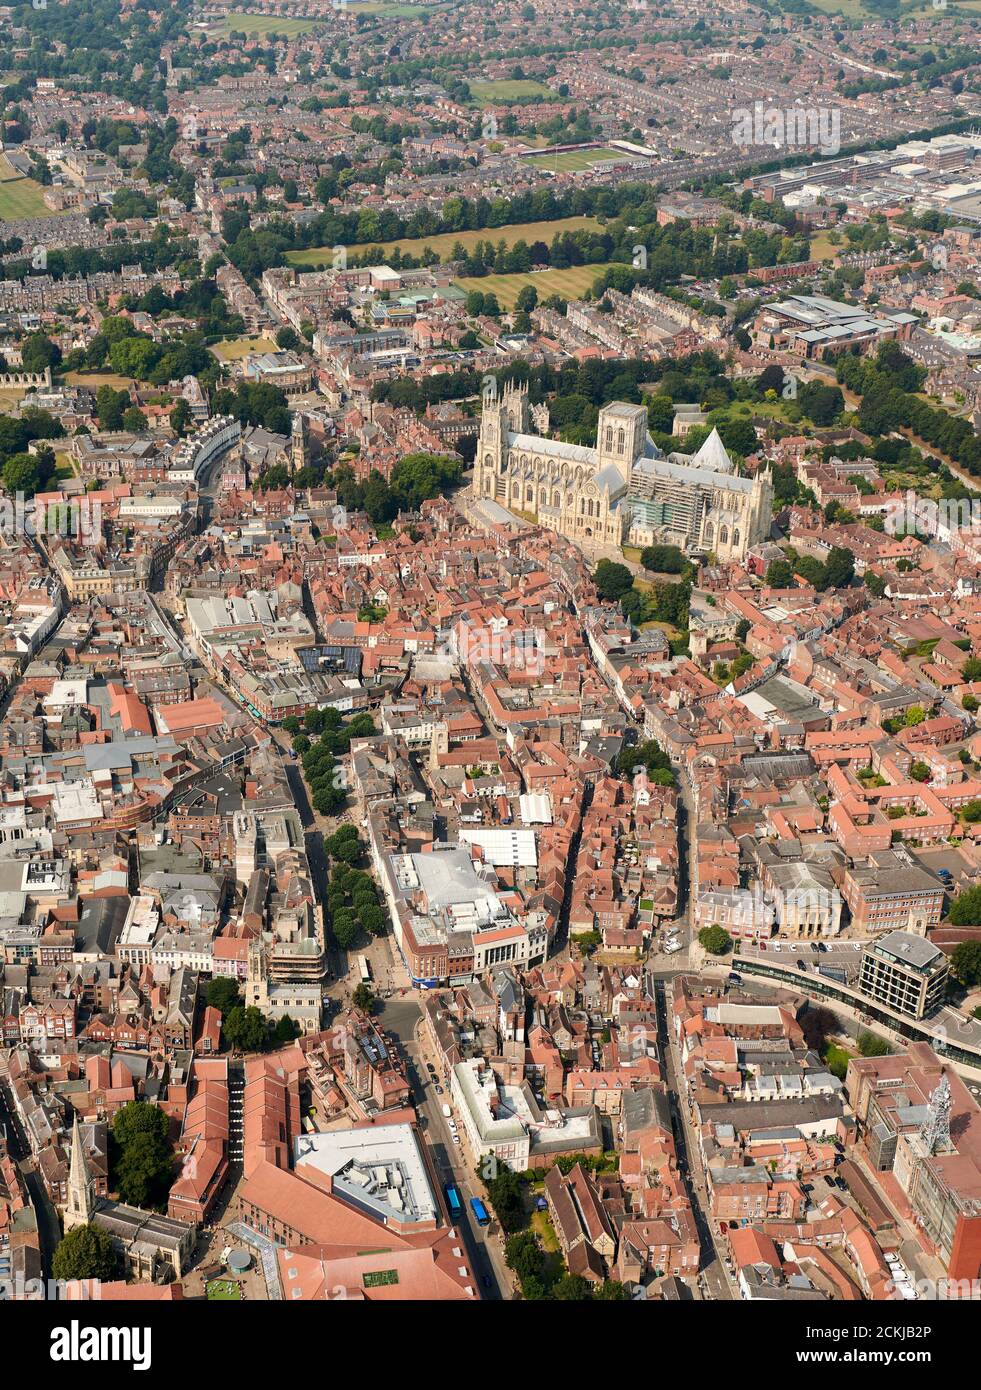 Une vue aérienne de la ville de York, du North Yorkshire, du nord de l'Angleterre, au Royaume-Uni Banque D'Images